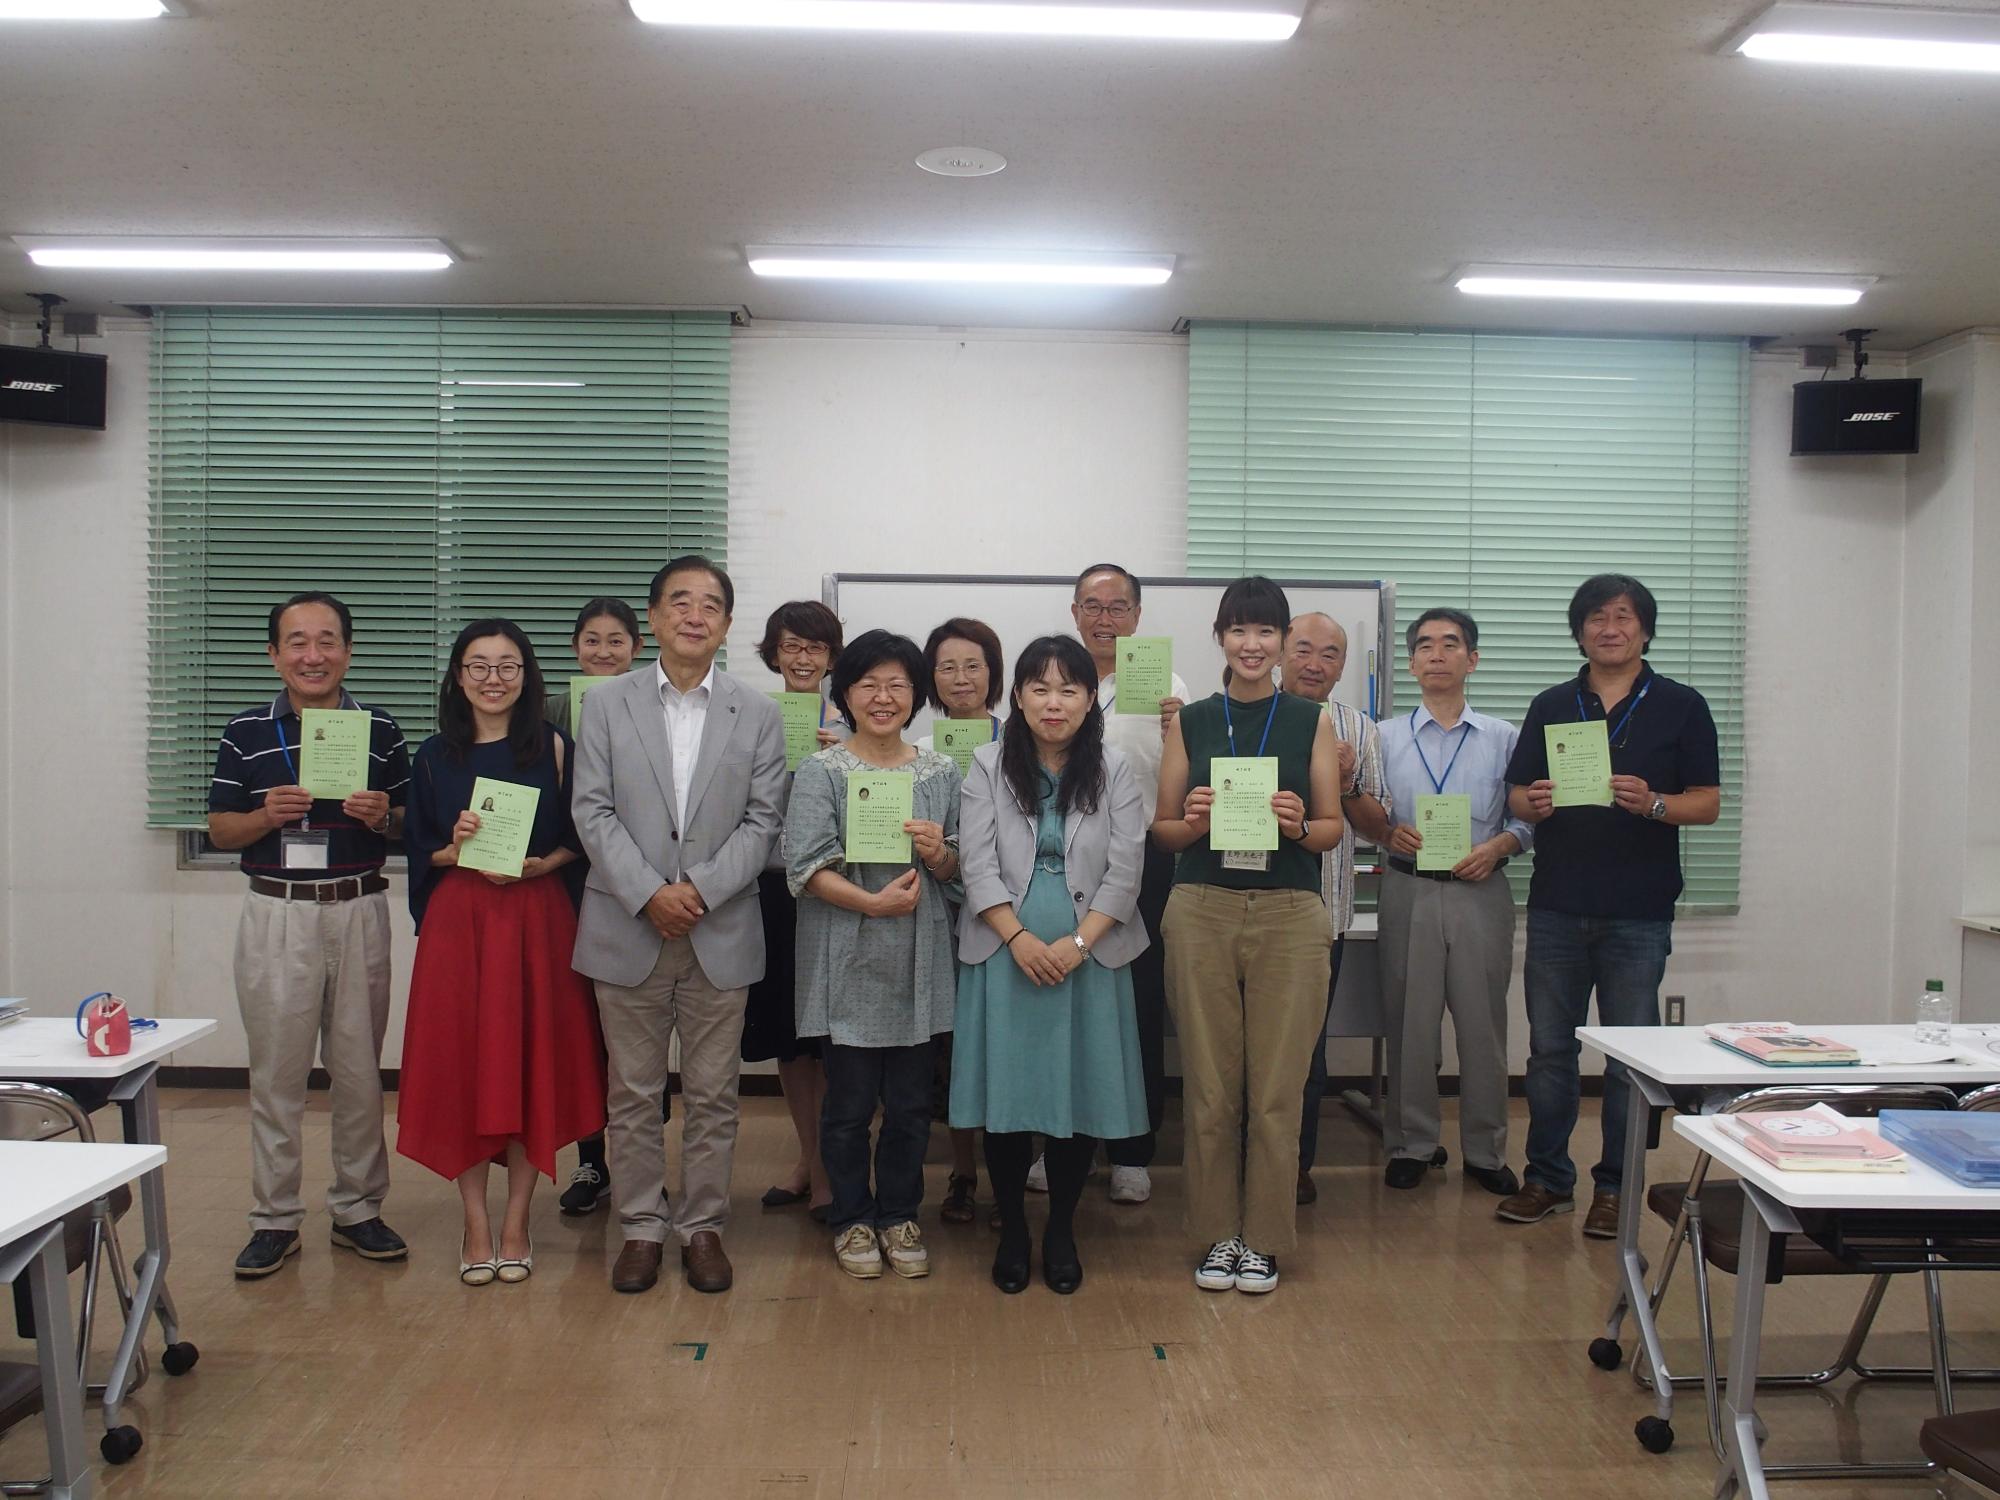 緑色の終了証書を手に記念撮影をしている日本語指導者養成講座参加者達の写真